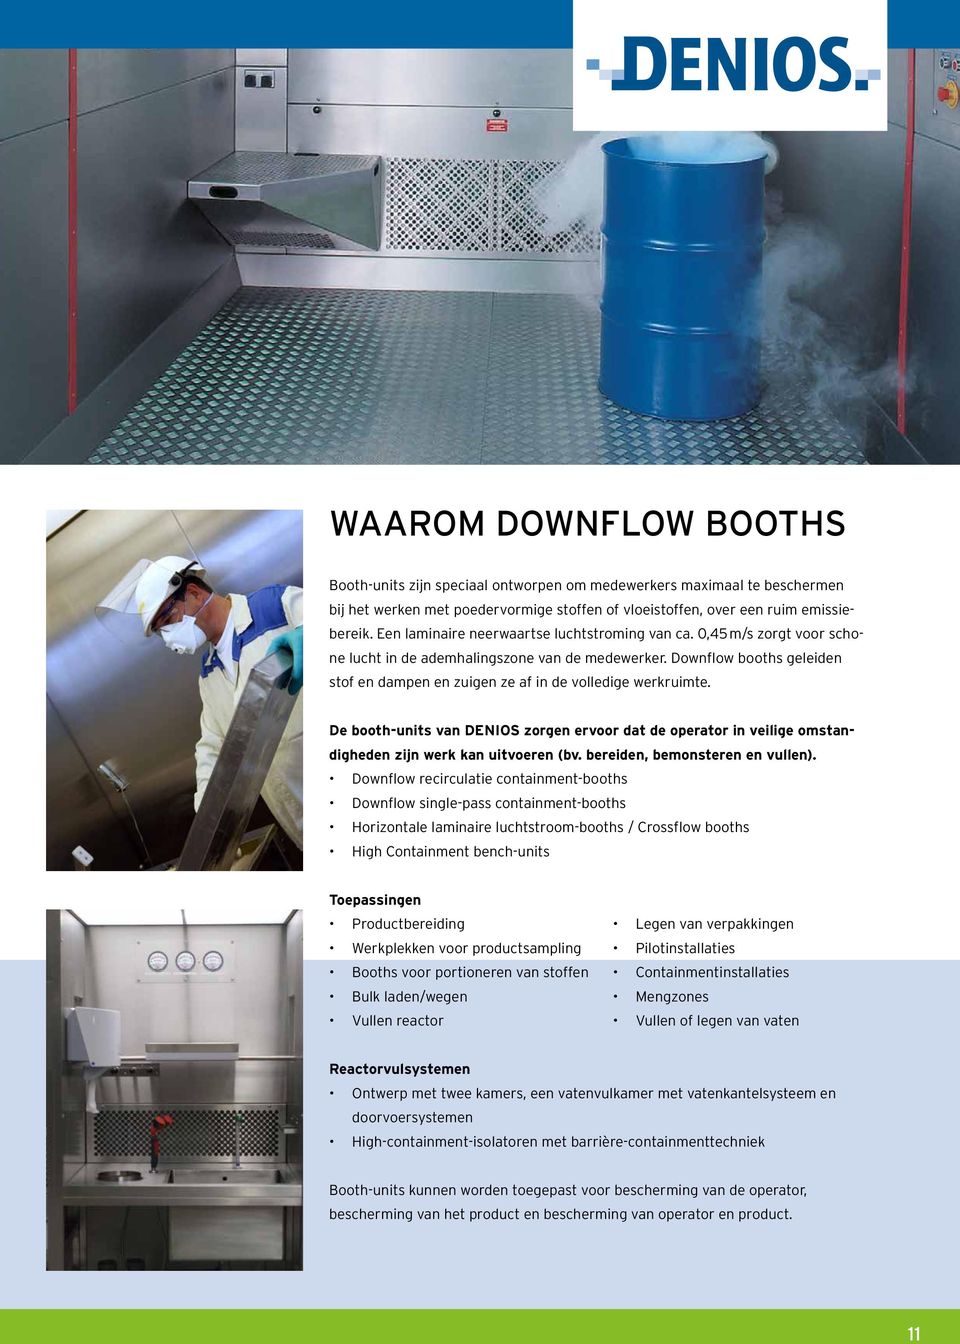 Downflow booths geleiden stof en dampen en zuigen ze af in de volledige werkruimte. De booth-units van DENIOS zorgen ervoor dat de operator in veilige omstandigheden zijn werk kan uitvoeren (bv.